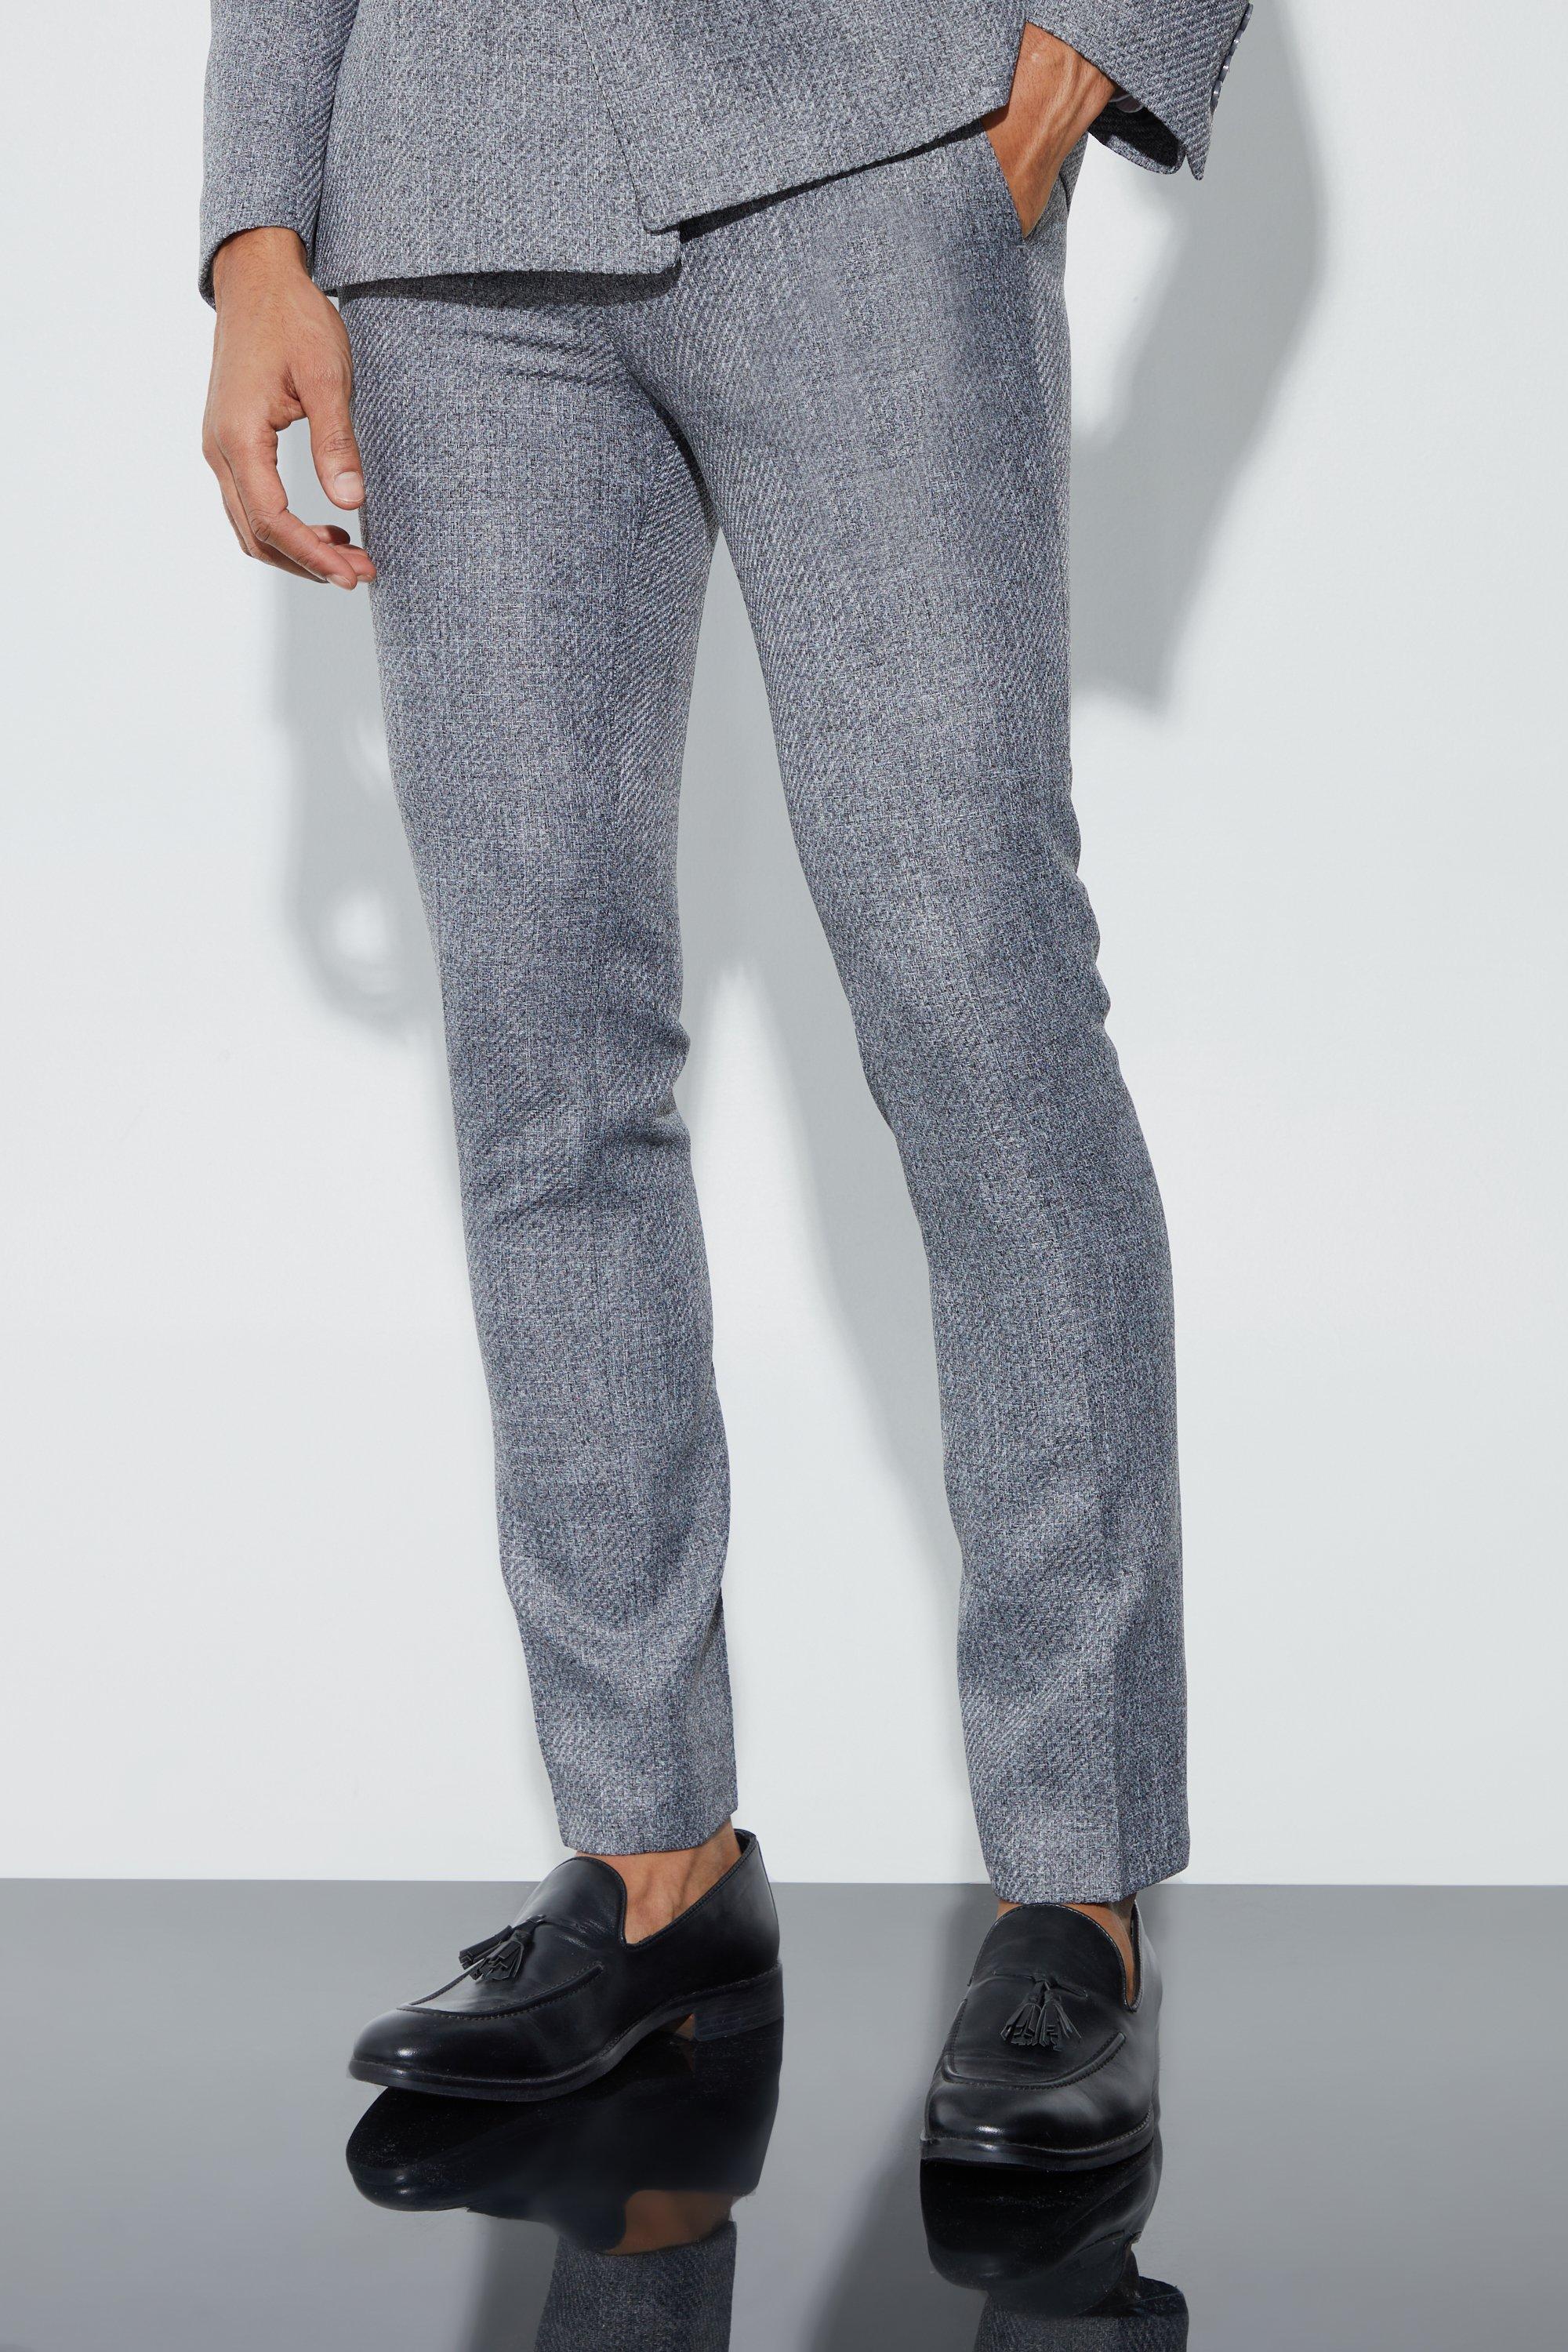 pantalon de costume skinny homme - gris - 28, gris